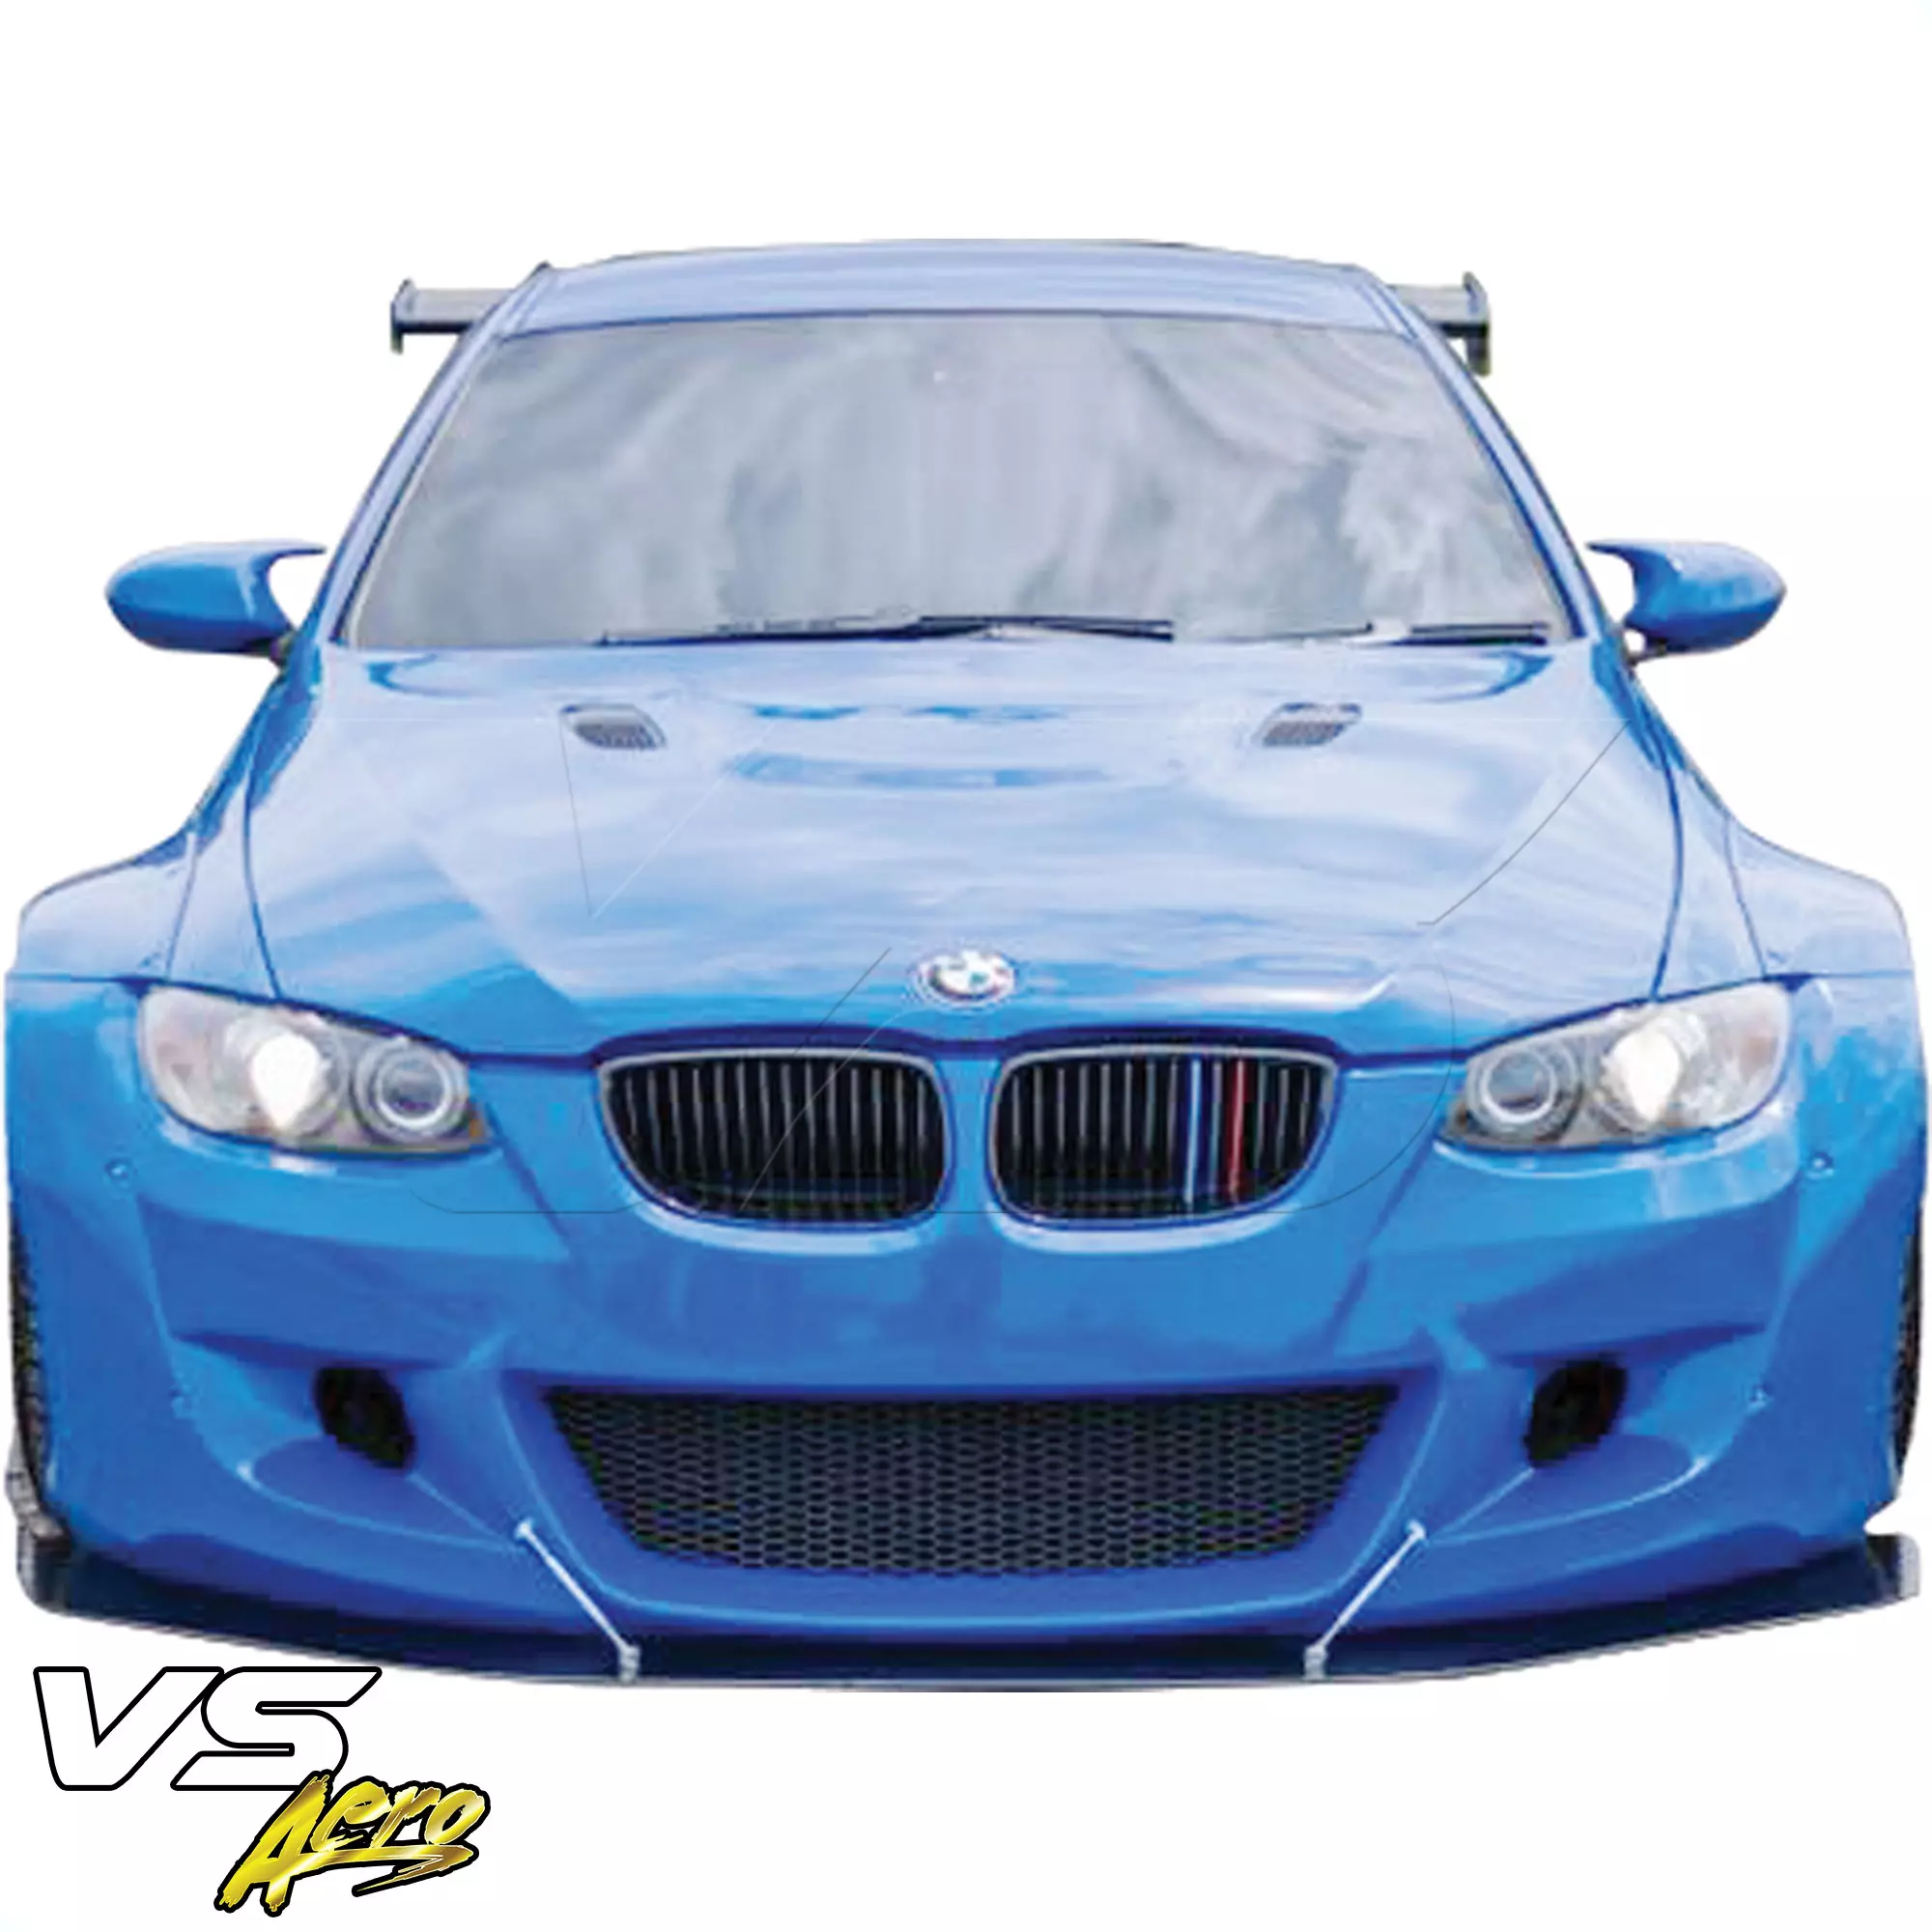 VSaero FRP TKYO Wide Body Front Bumper > BMW M3 E92 2008-2013 > 2dr - Image 16